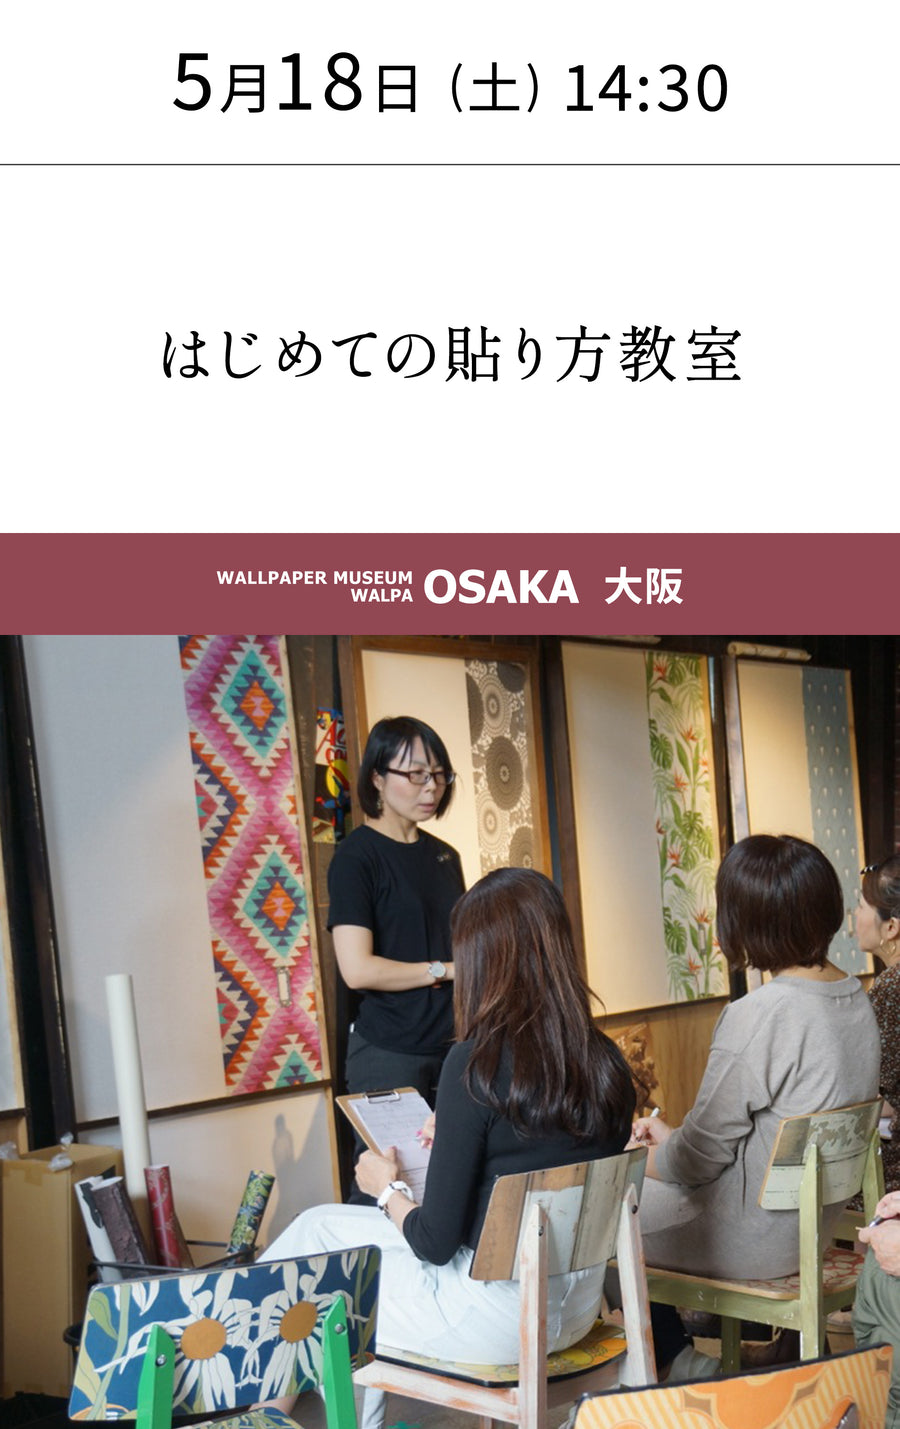 5月18日(土) 14:30～WALLPAPER MUSEUM WALPA / OSAKA ワークショップ 「はじめての貼り方教室」